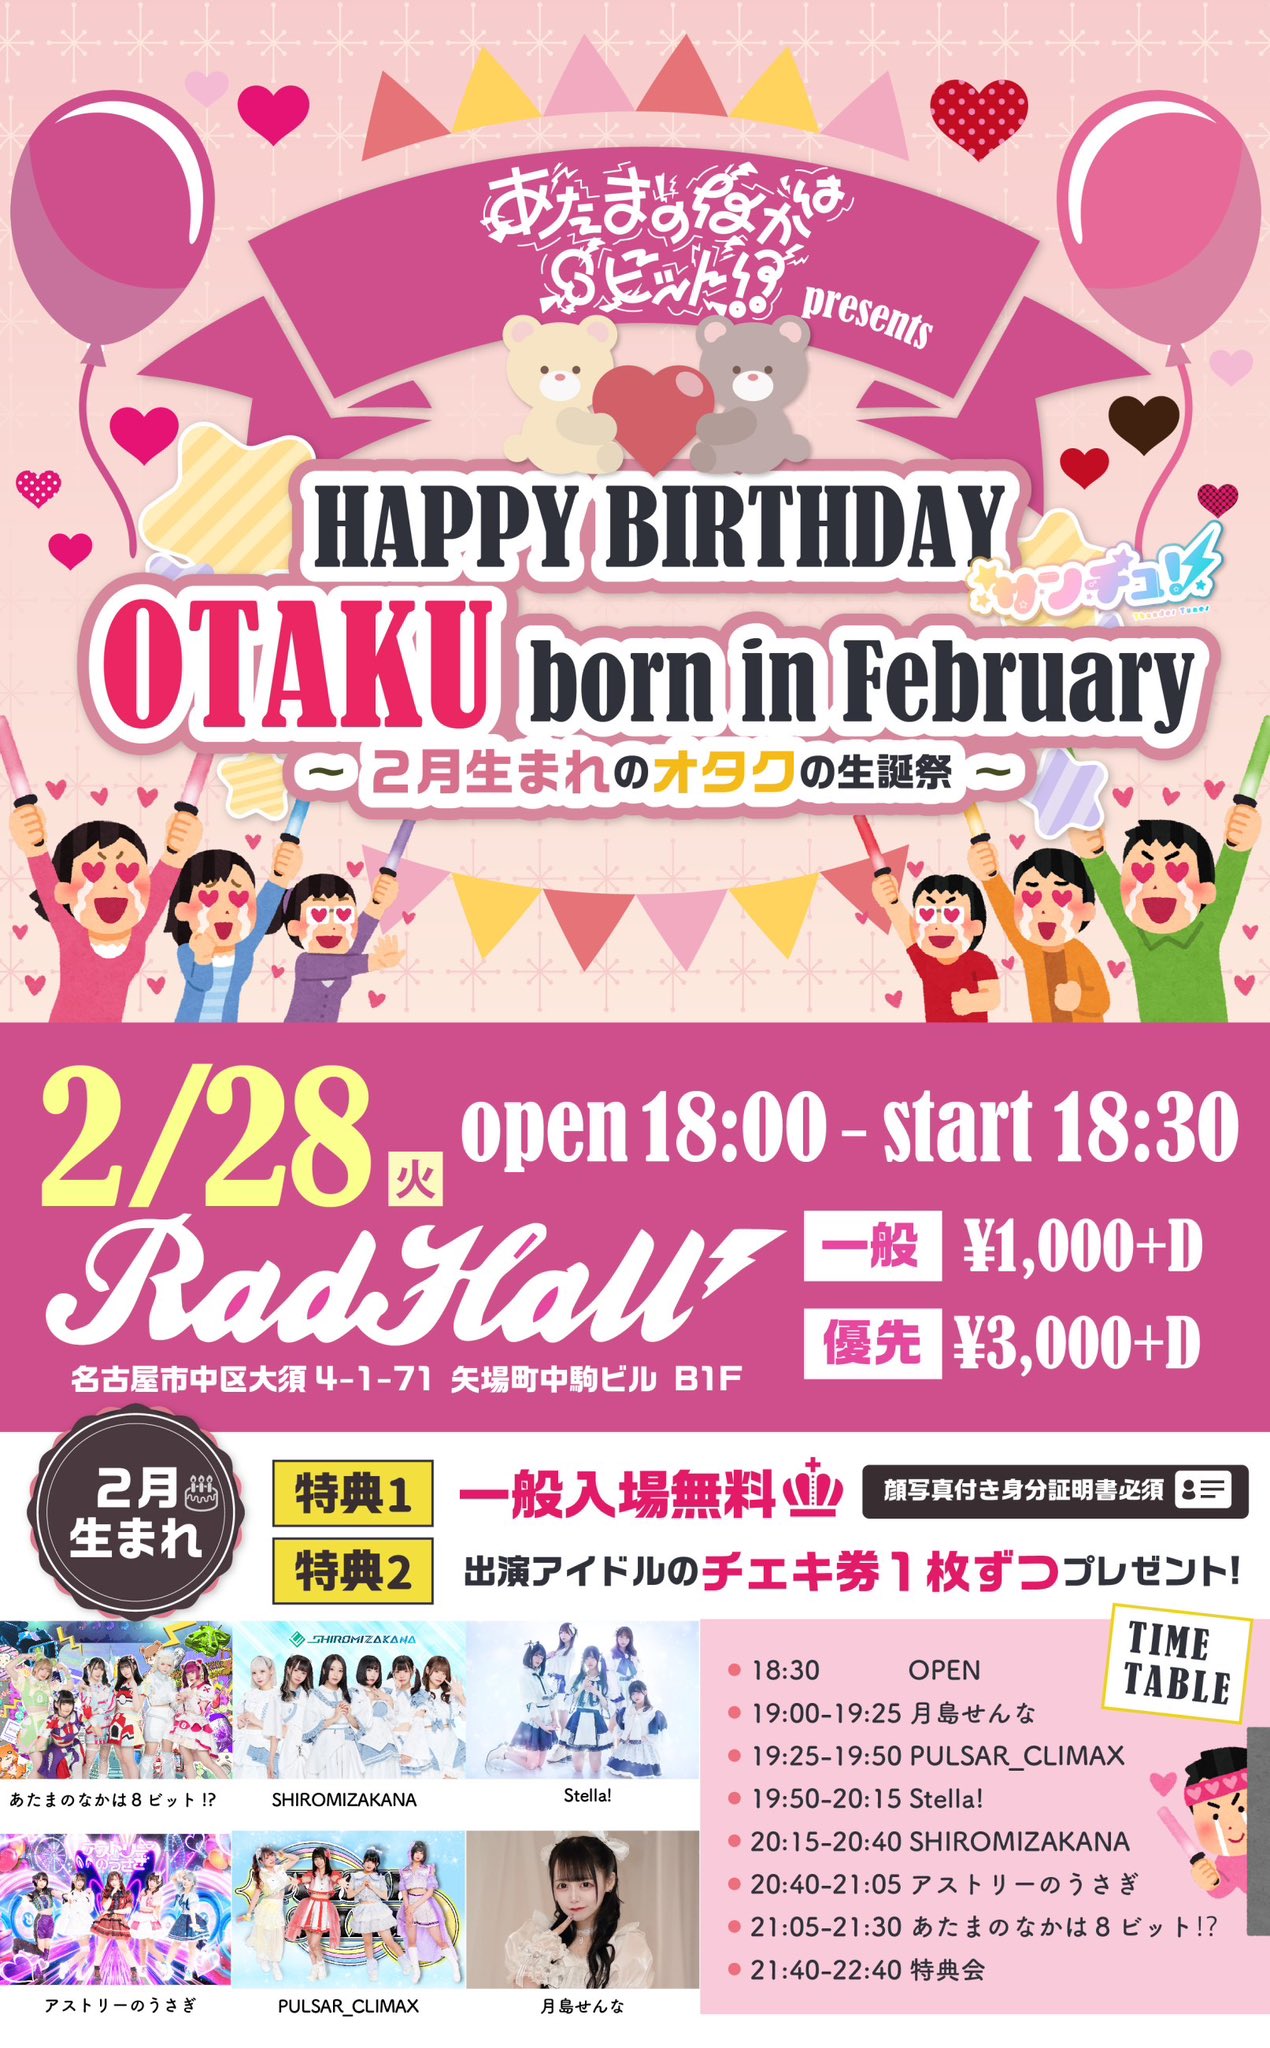 あたまのなかは8ビット!? HAPPY BIRTHDAY OTAKU born in the February